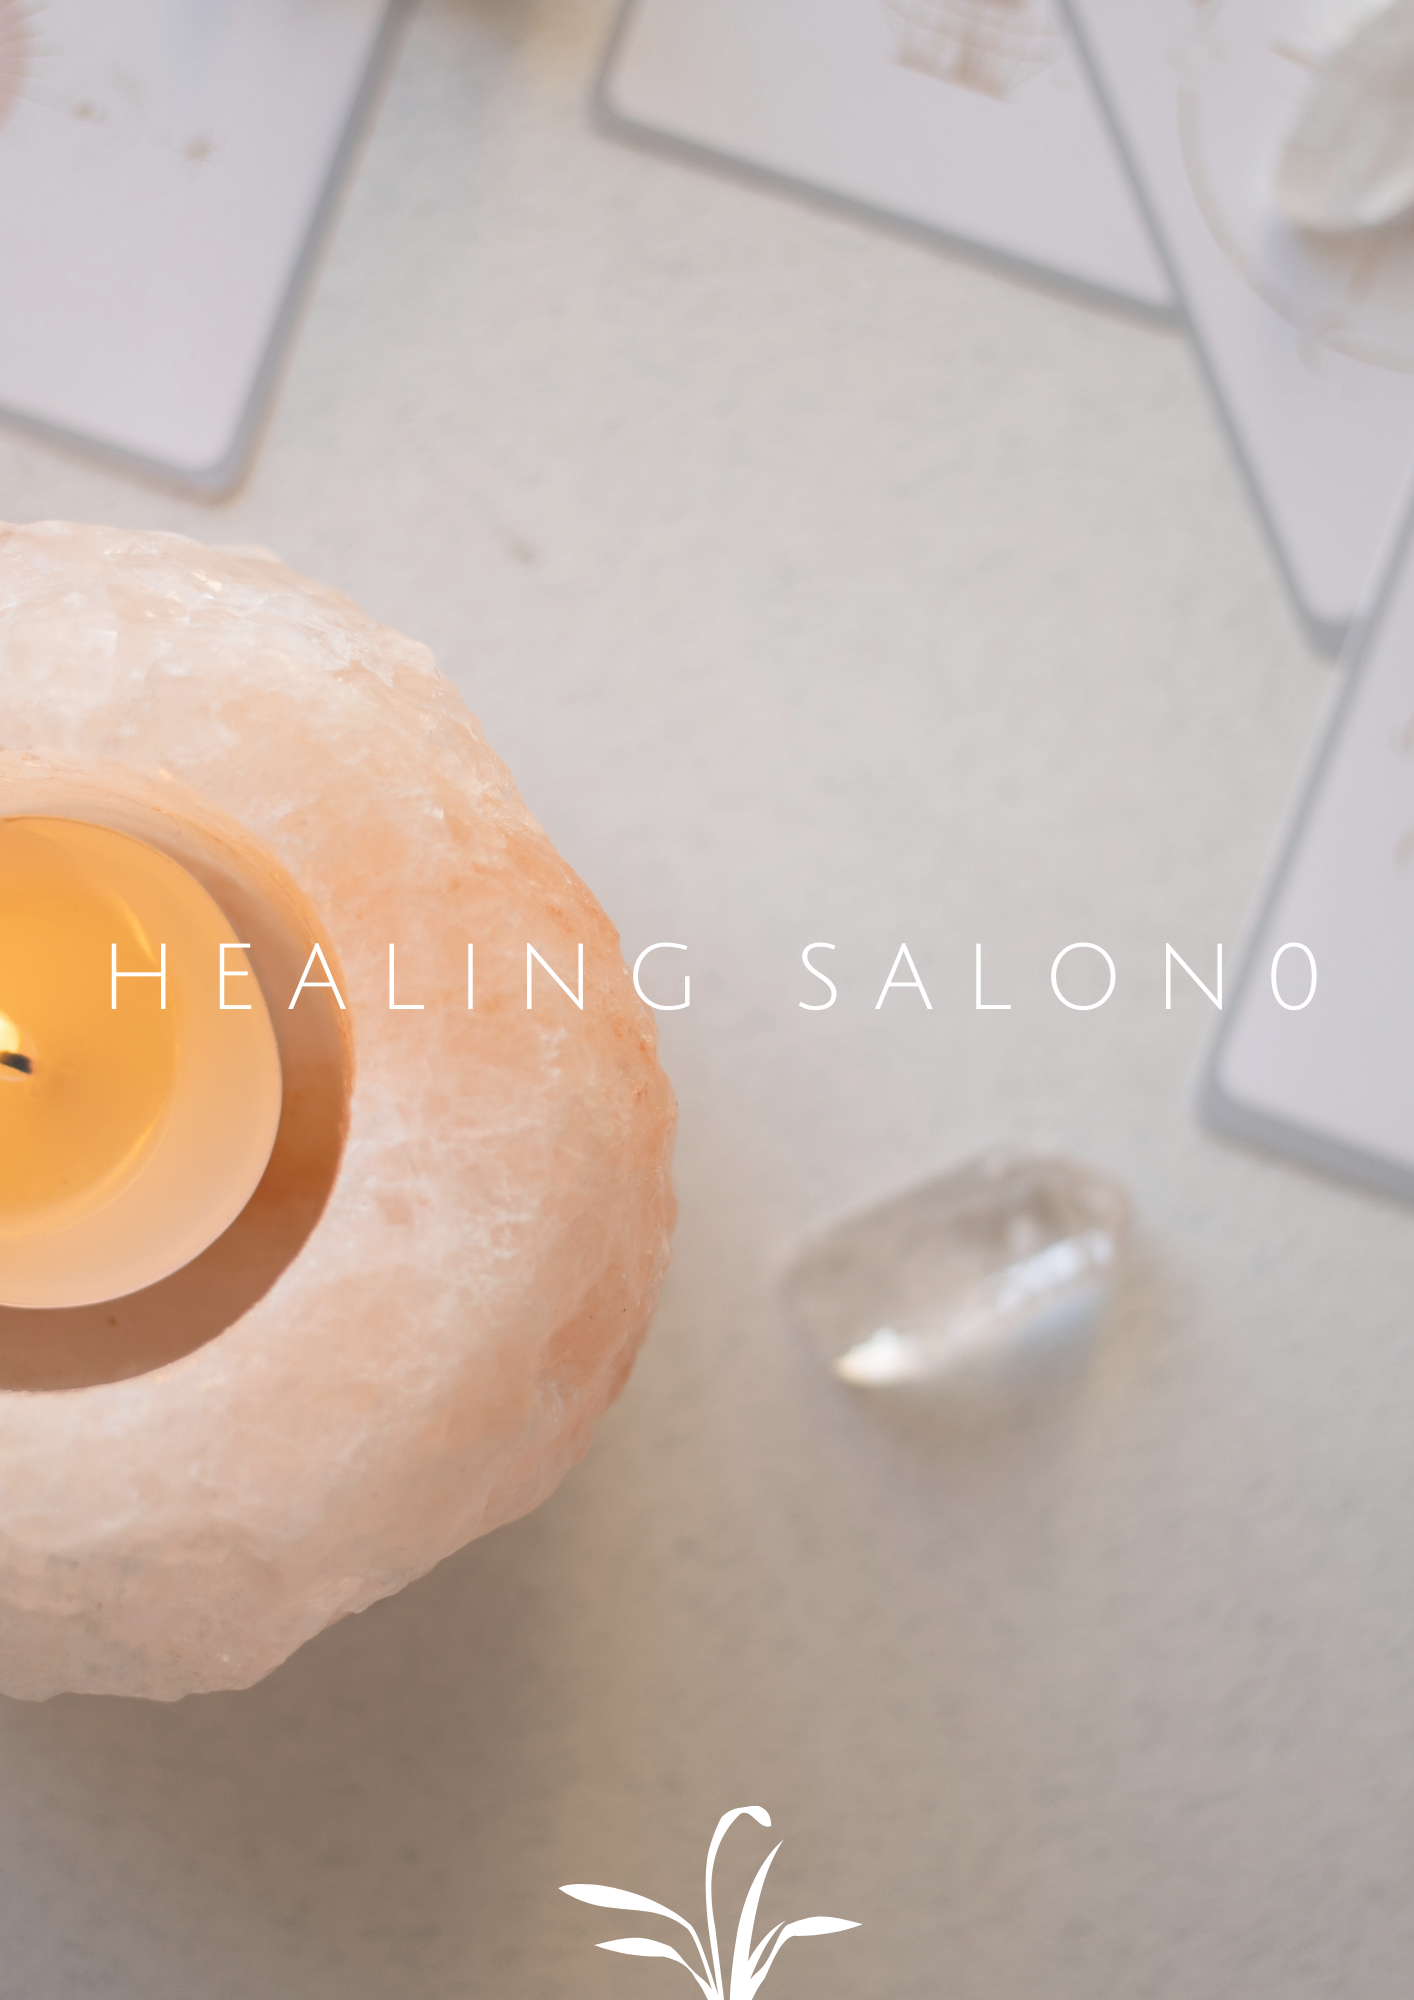 Healing Salon0~zero~とは